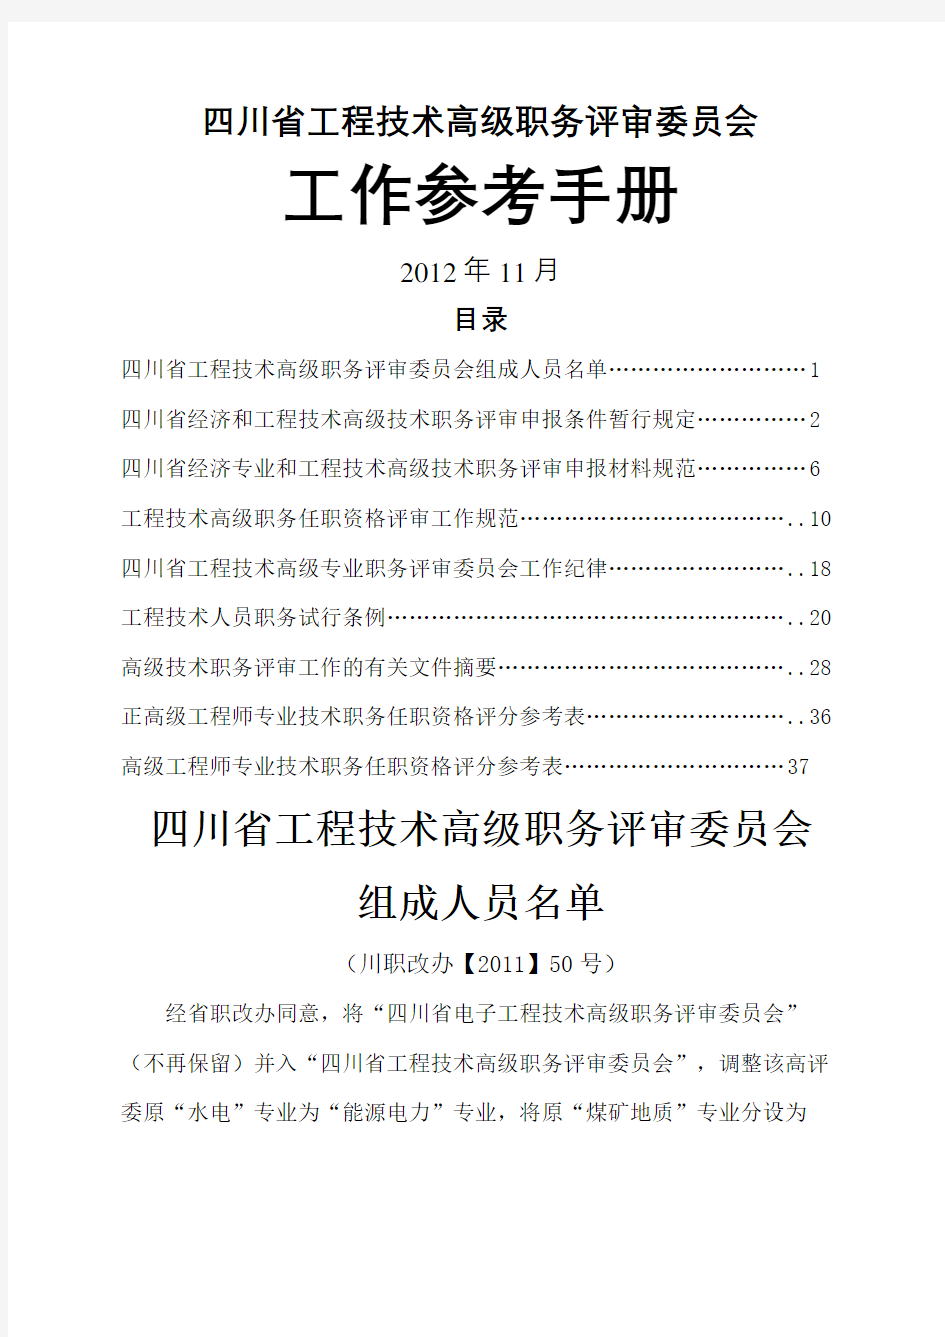 四川省工程技术高级职务评审委员会工作参考手册